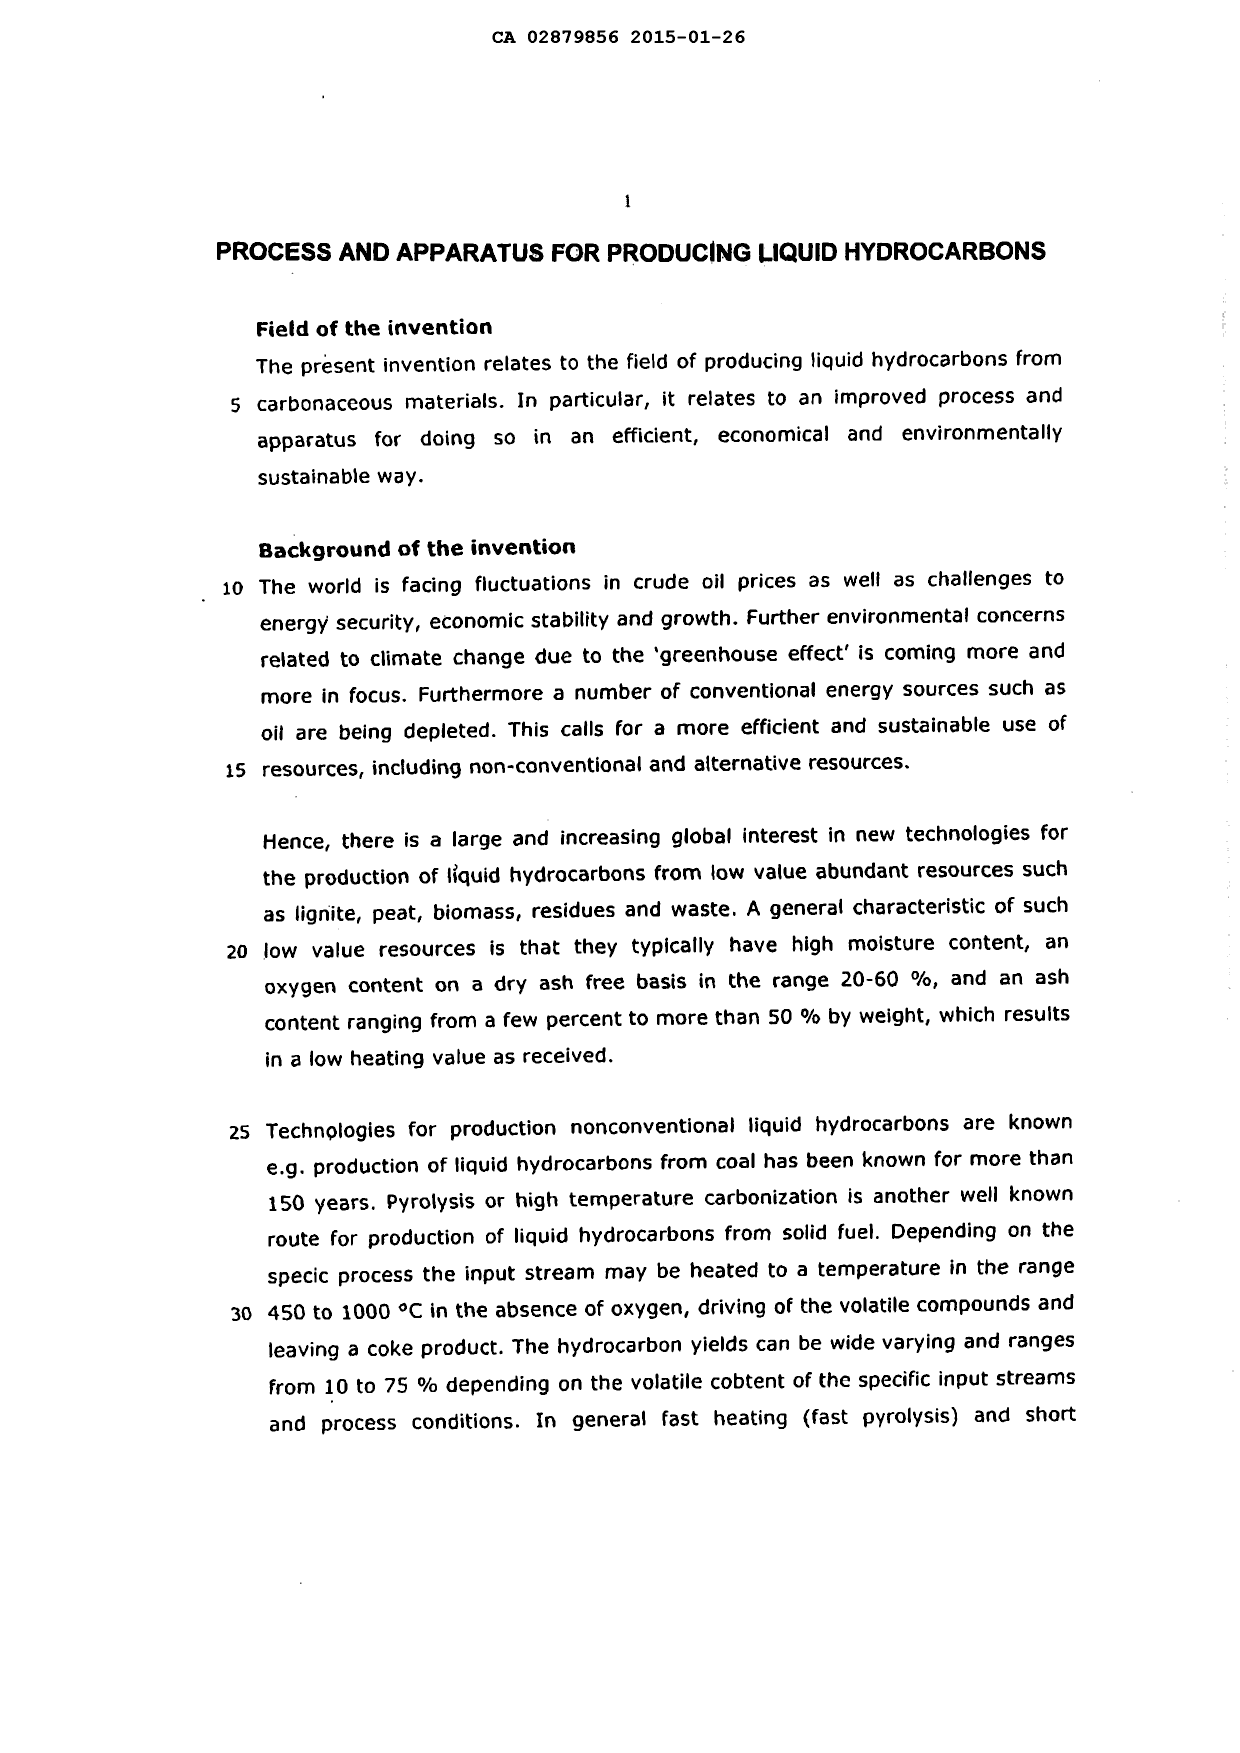 Canadian Patent Document 2879856. Description 20141226. Image 1 of 85